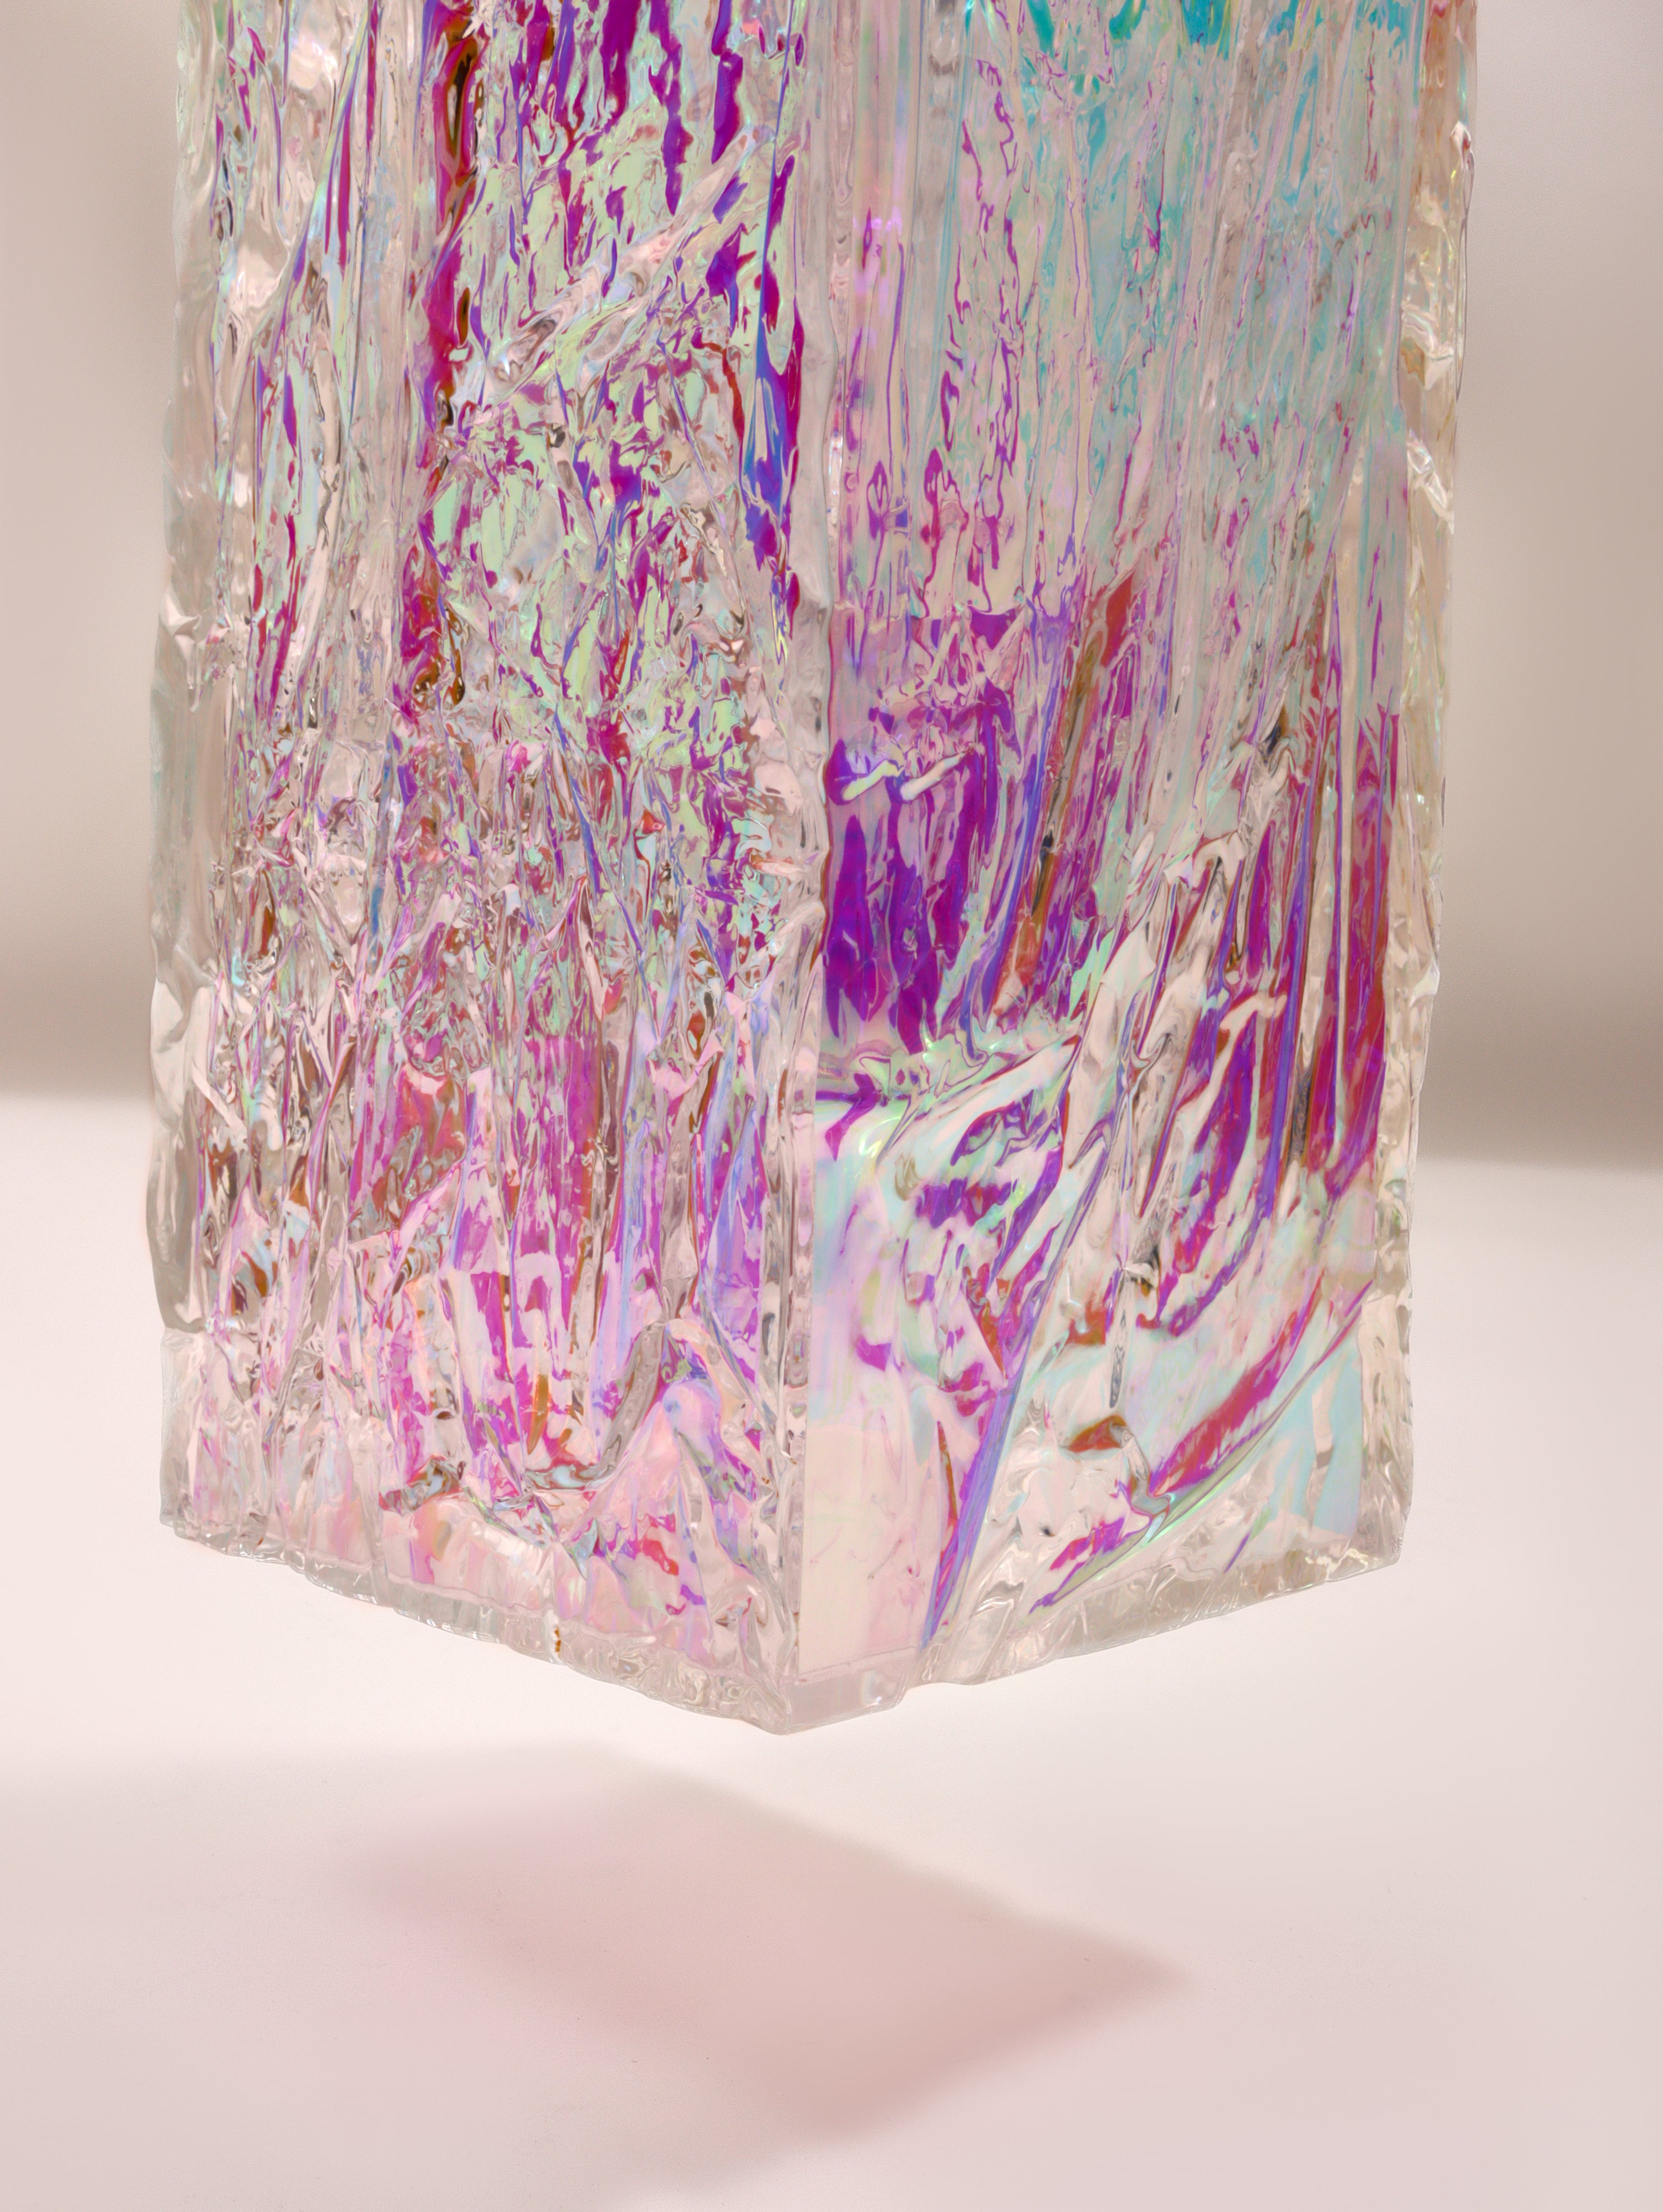 Crushed ice Iridescent vase